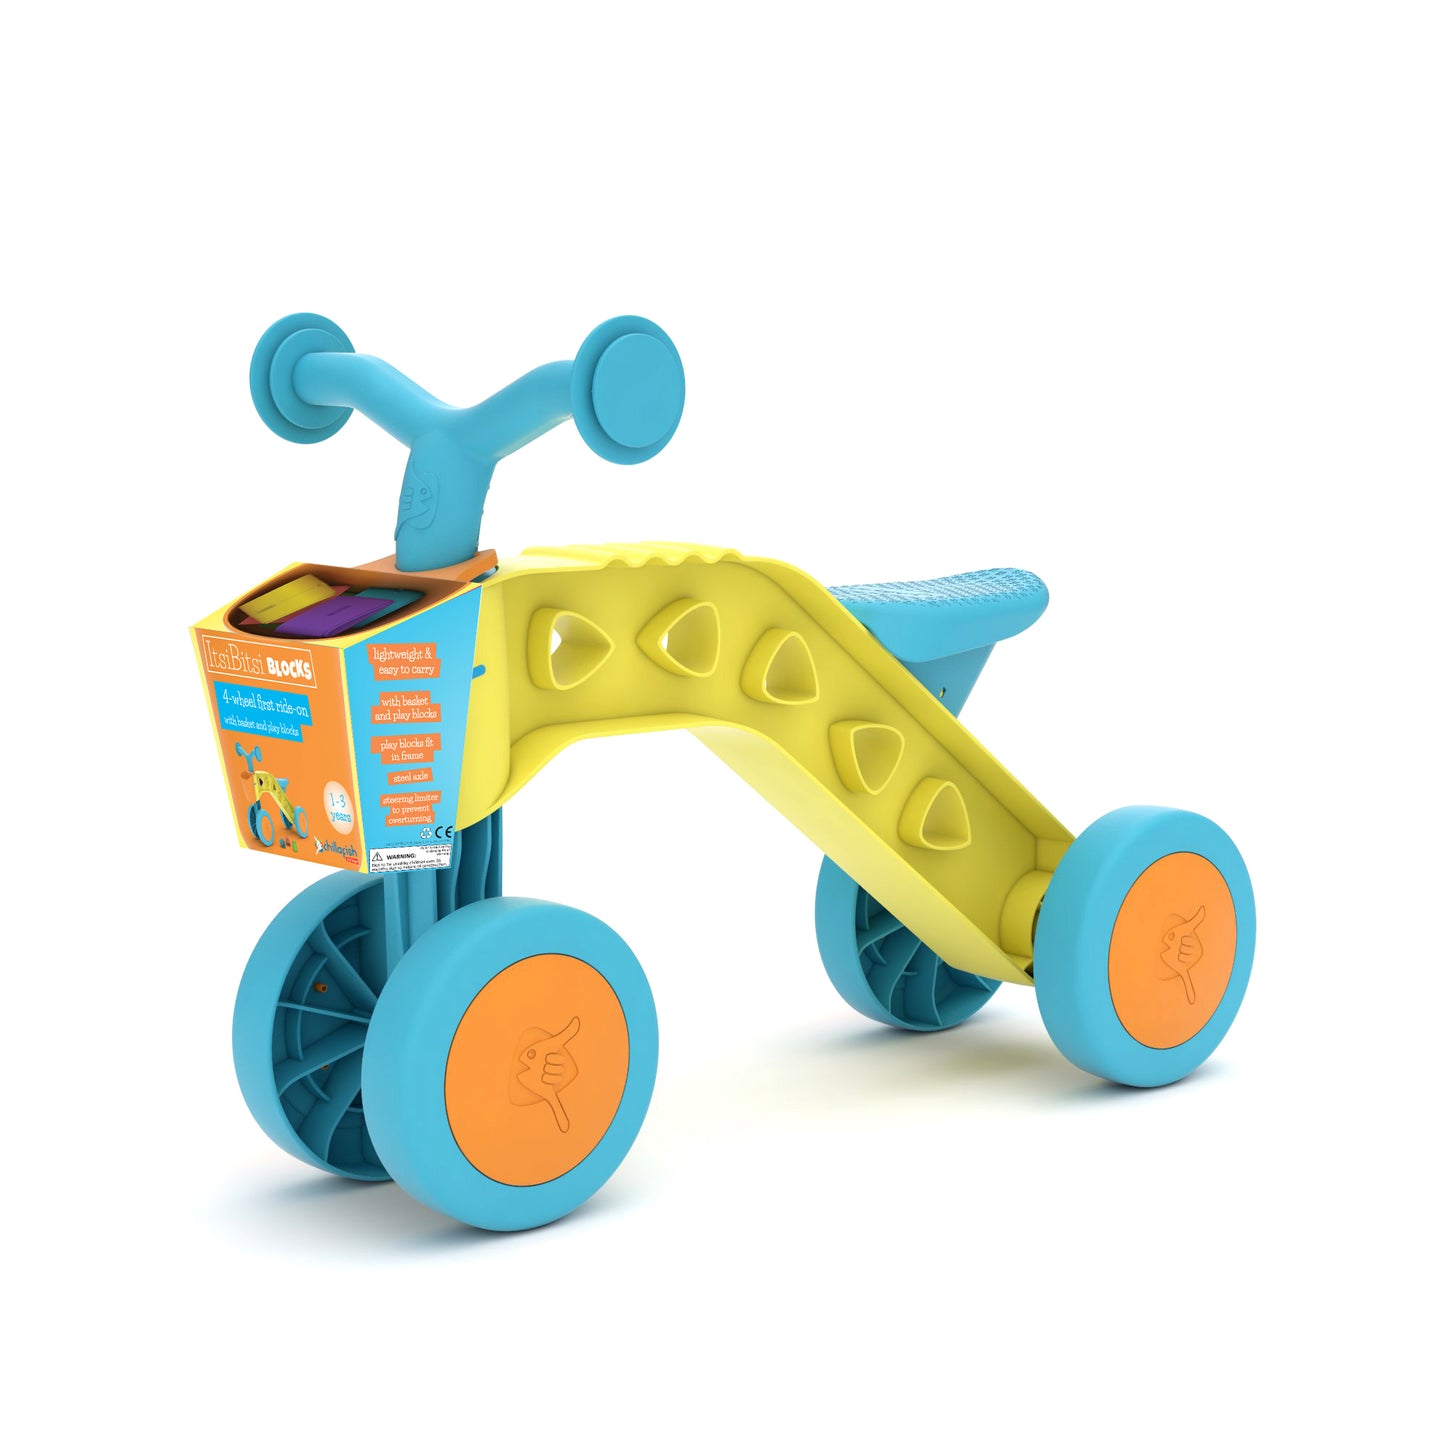 ItsiBitsi-Blocks, Laufrad mit Aufbewahrungskorb und Spielblöcken, die in den Rahmen passen, personnalisier deinen Rahmen, für Kinder von 1 bis 3 Jahren